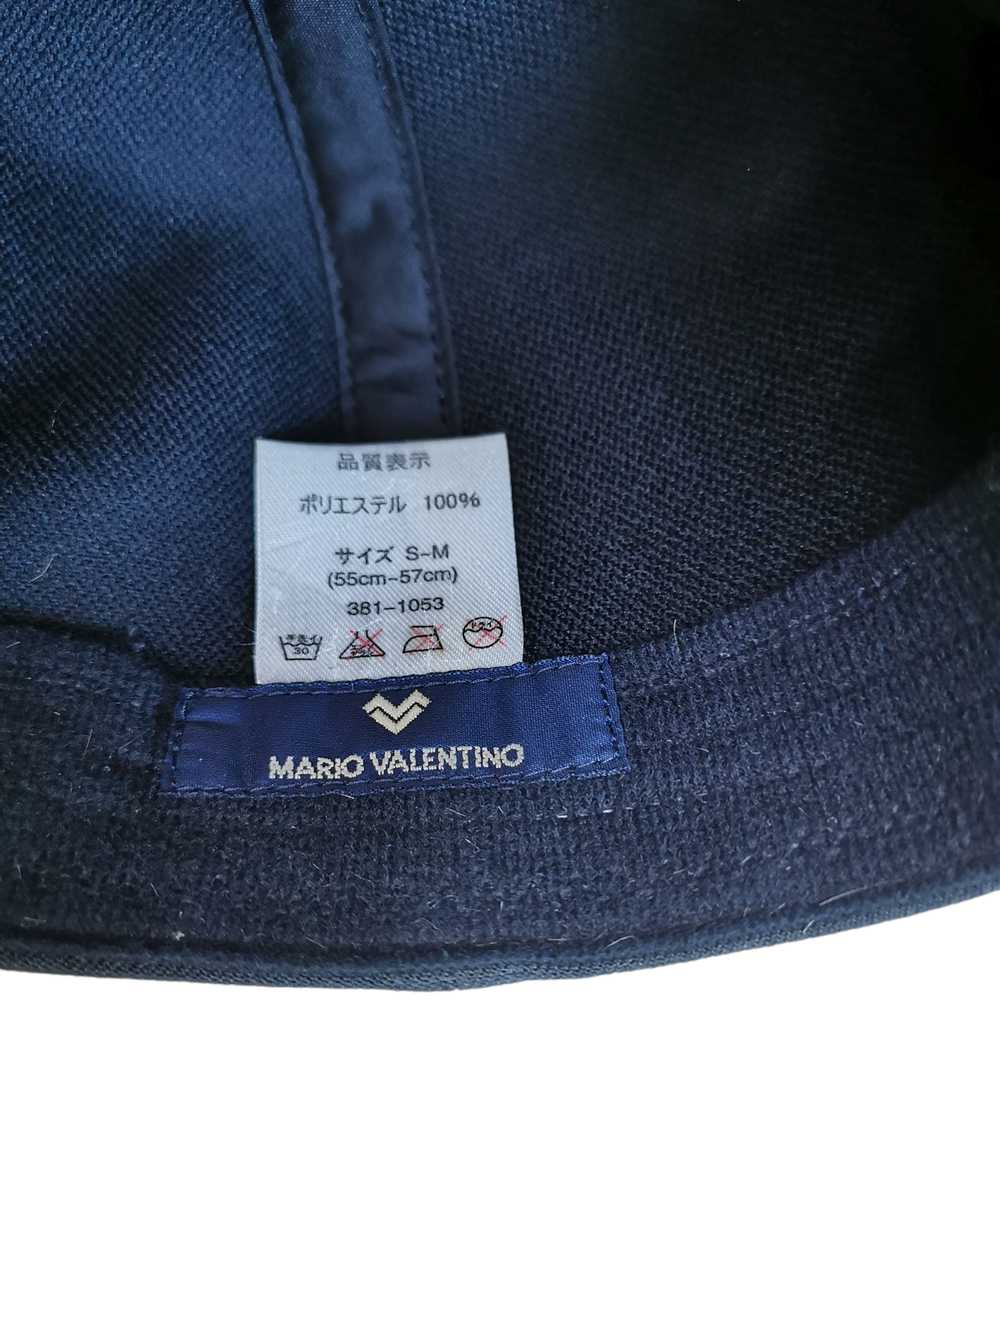 MARIO VALENTINO DESIGNER HAT CAP - image 5